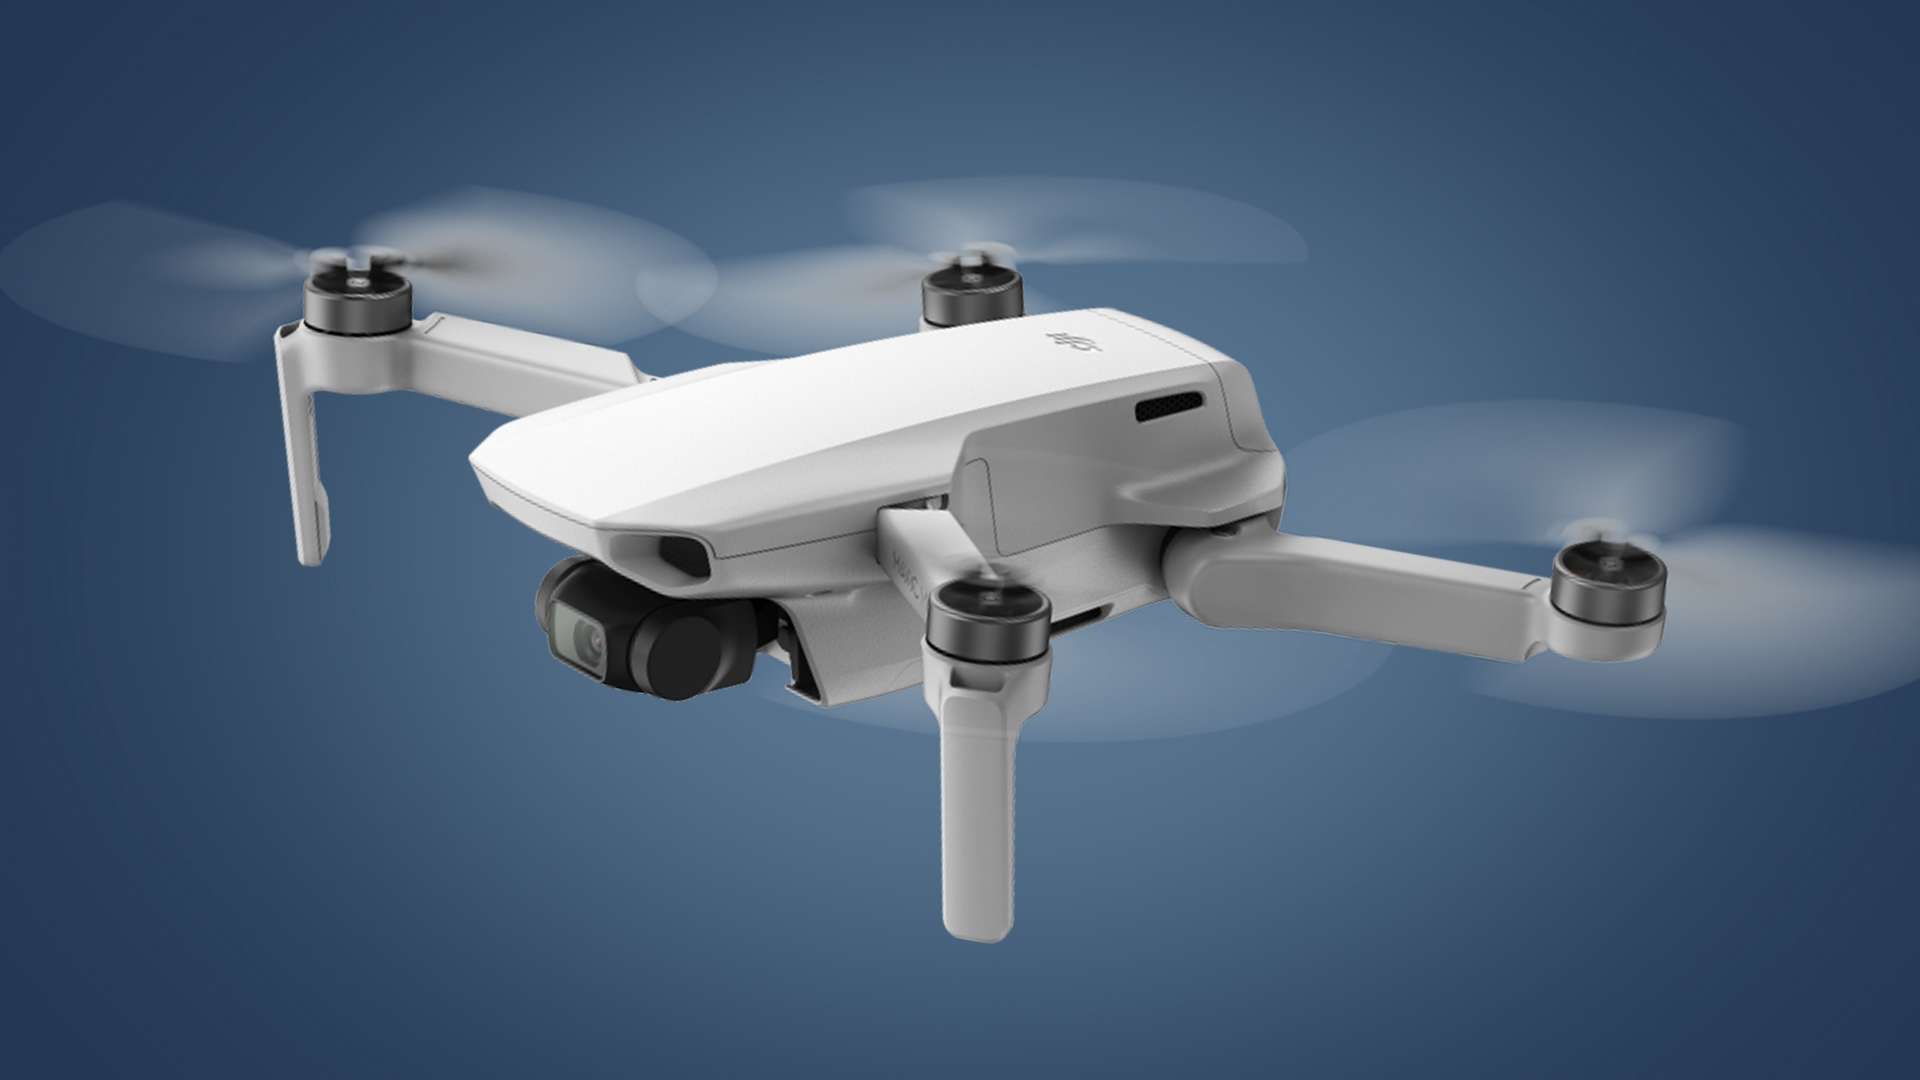 Le drone avec caméra hd - Science et vie